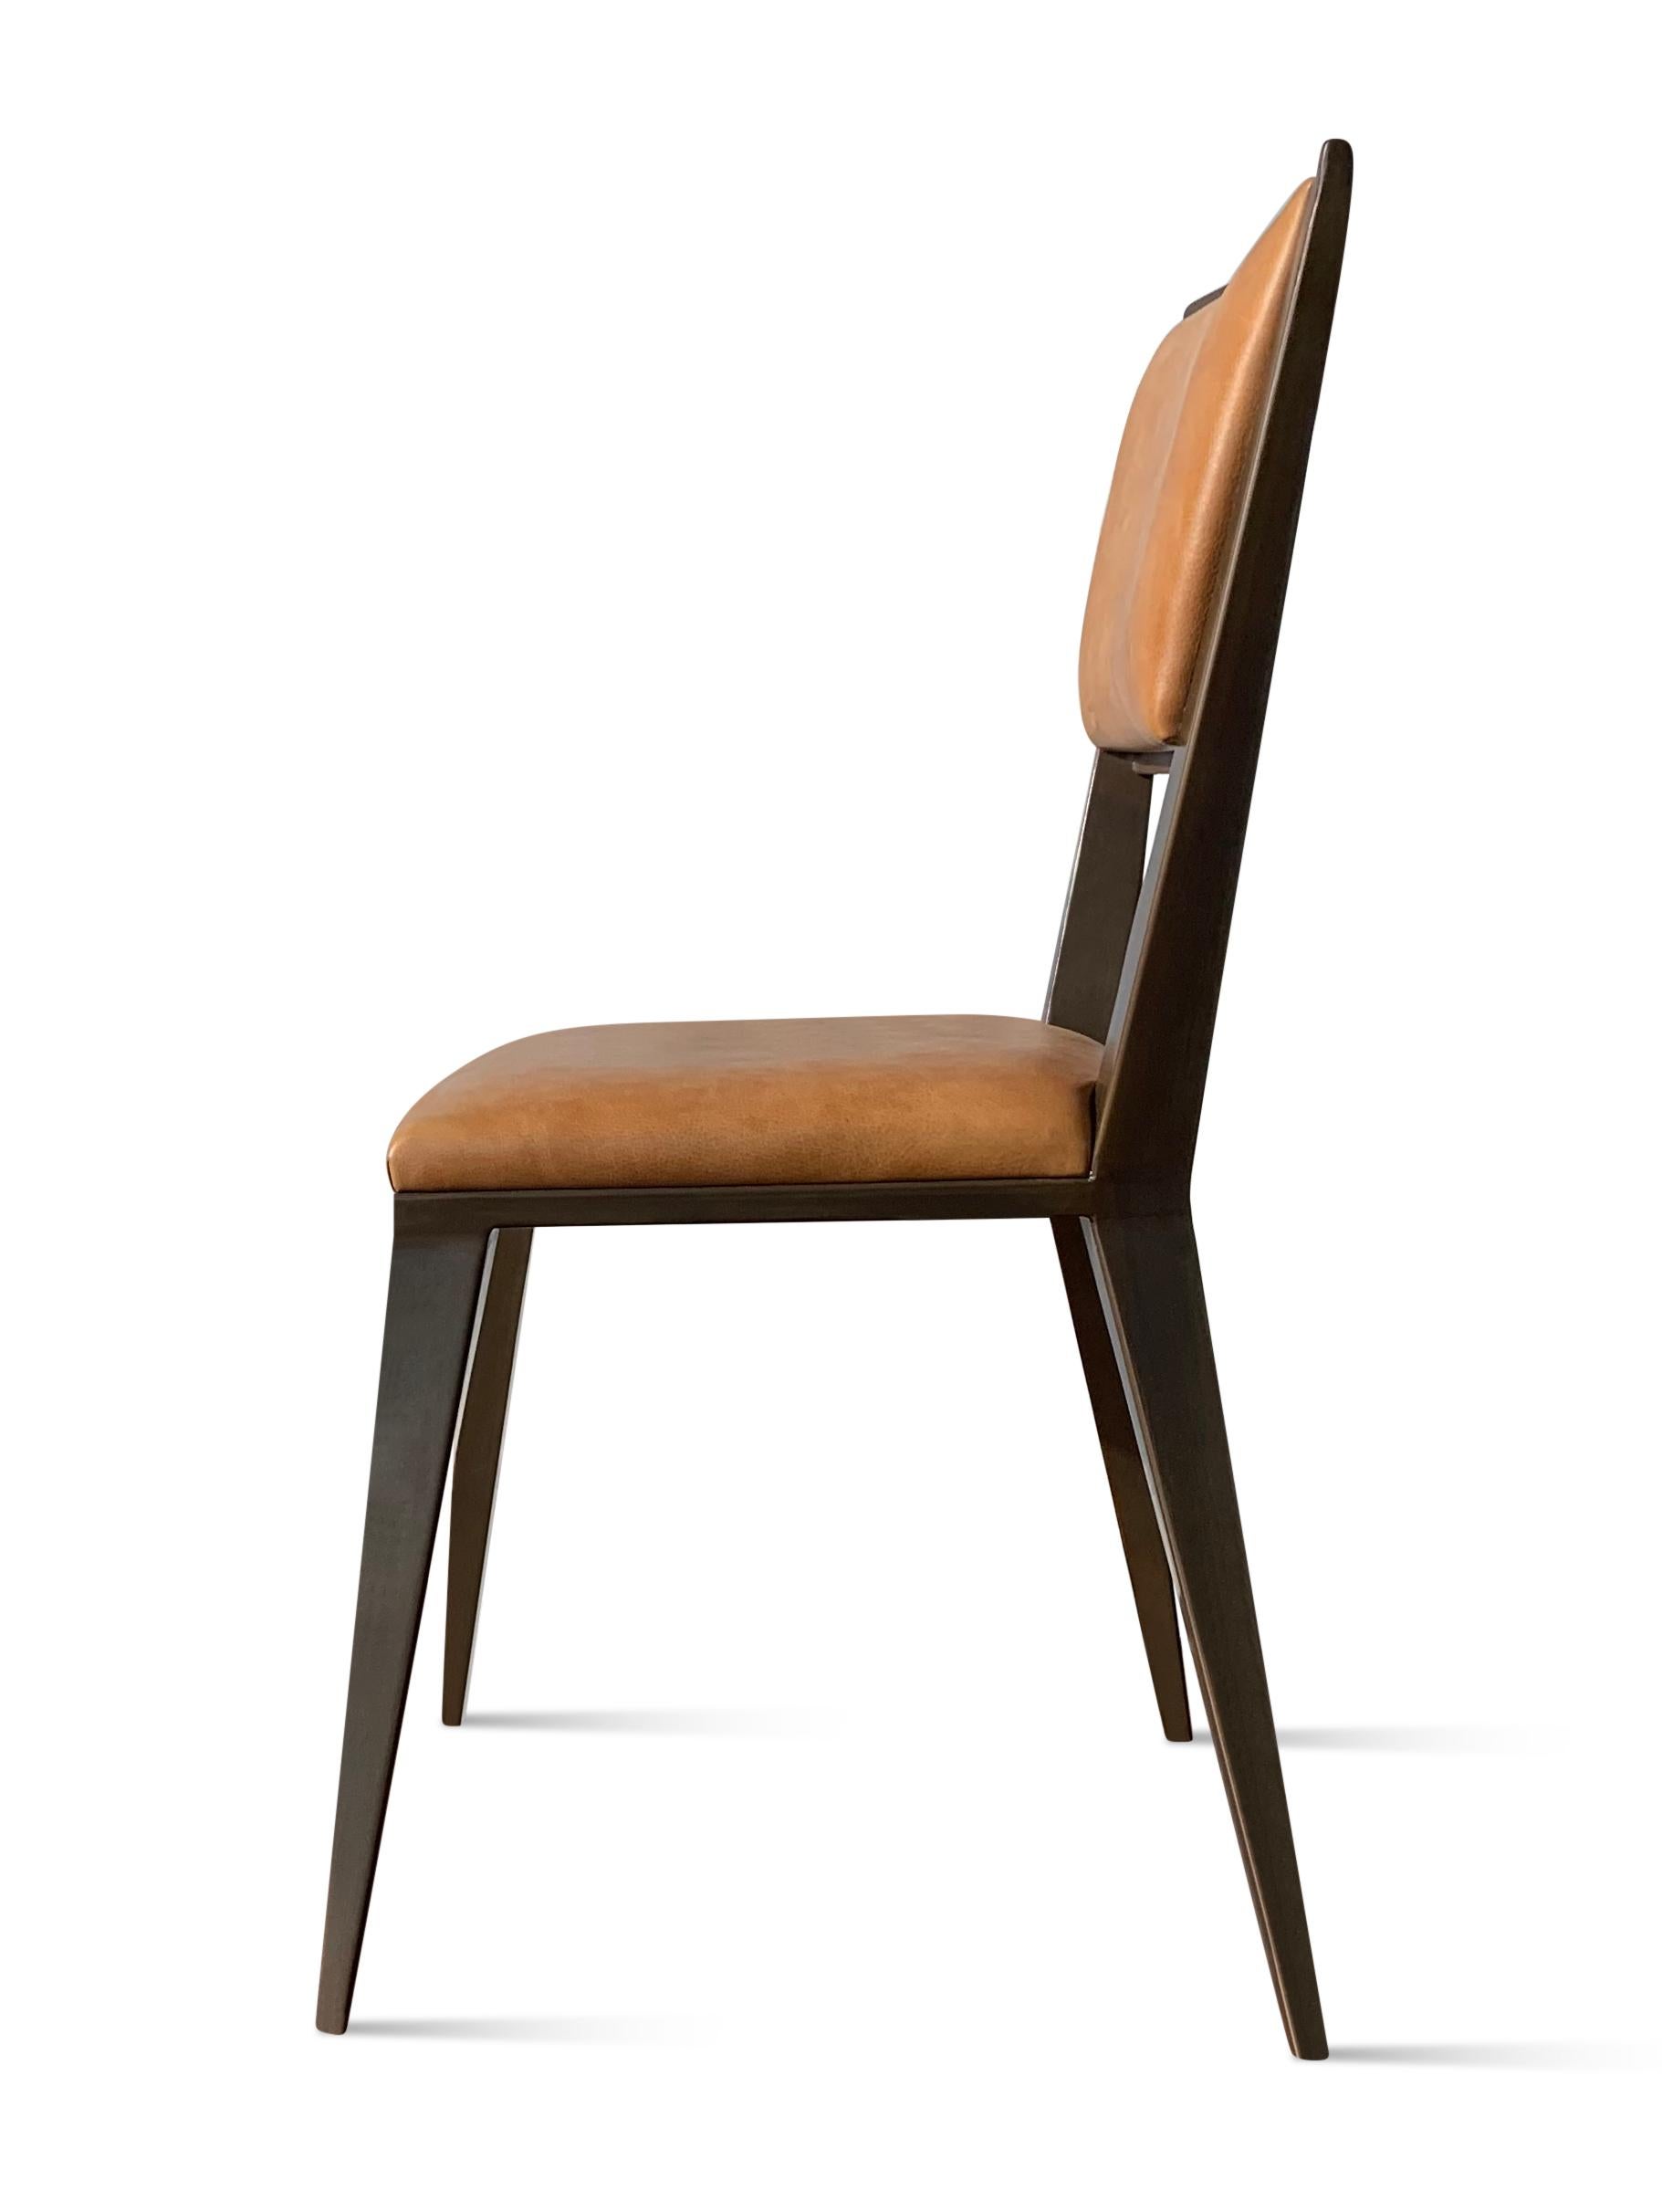 Der Rodelio Chair von Costantini besteht aus einem nahezu unzerstörbaren und dennoch leichten Metallrahmen mit abnehmbarer Sitzfläche und Rückenlehne, die bei Bedarf einfach neu gepolstert werden können. Eines der frühesten Designs von Costantini